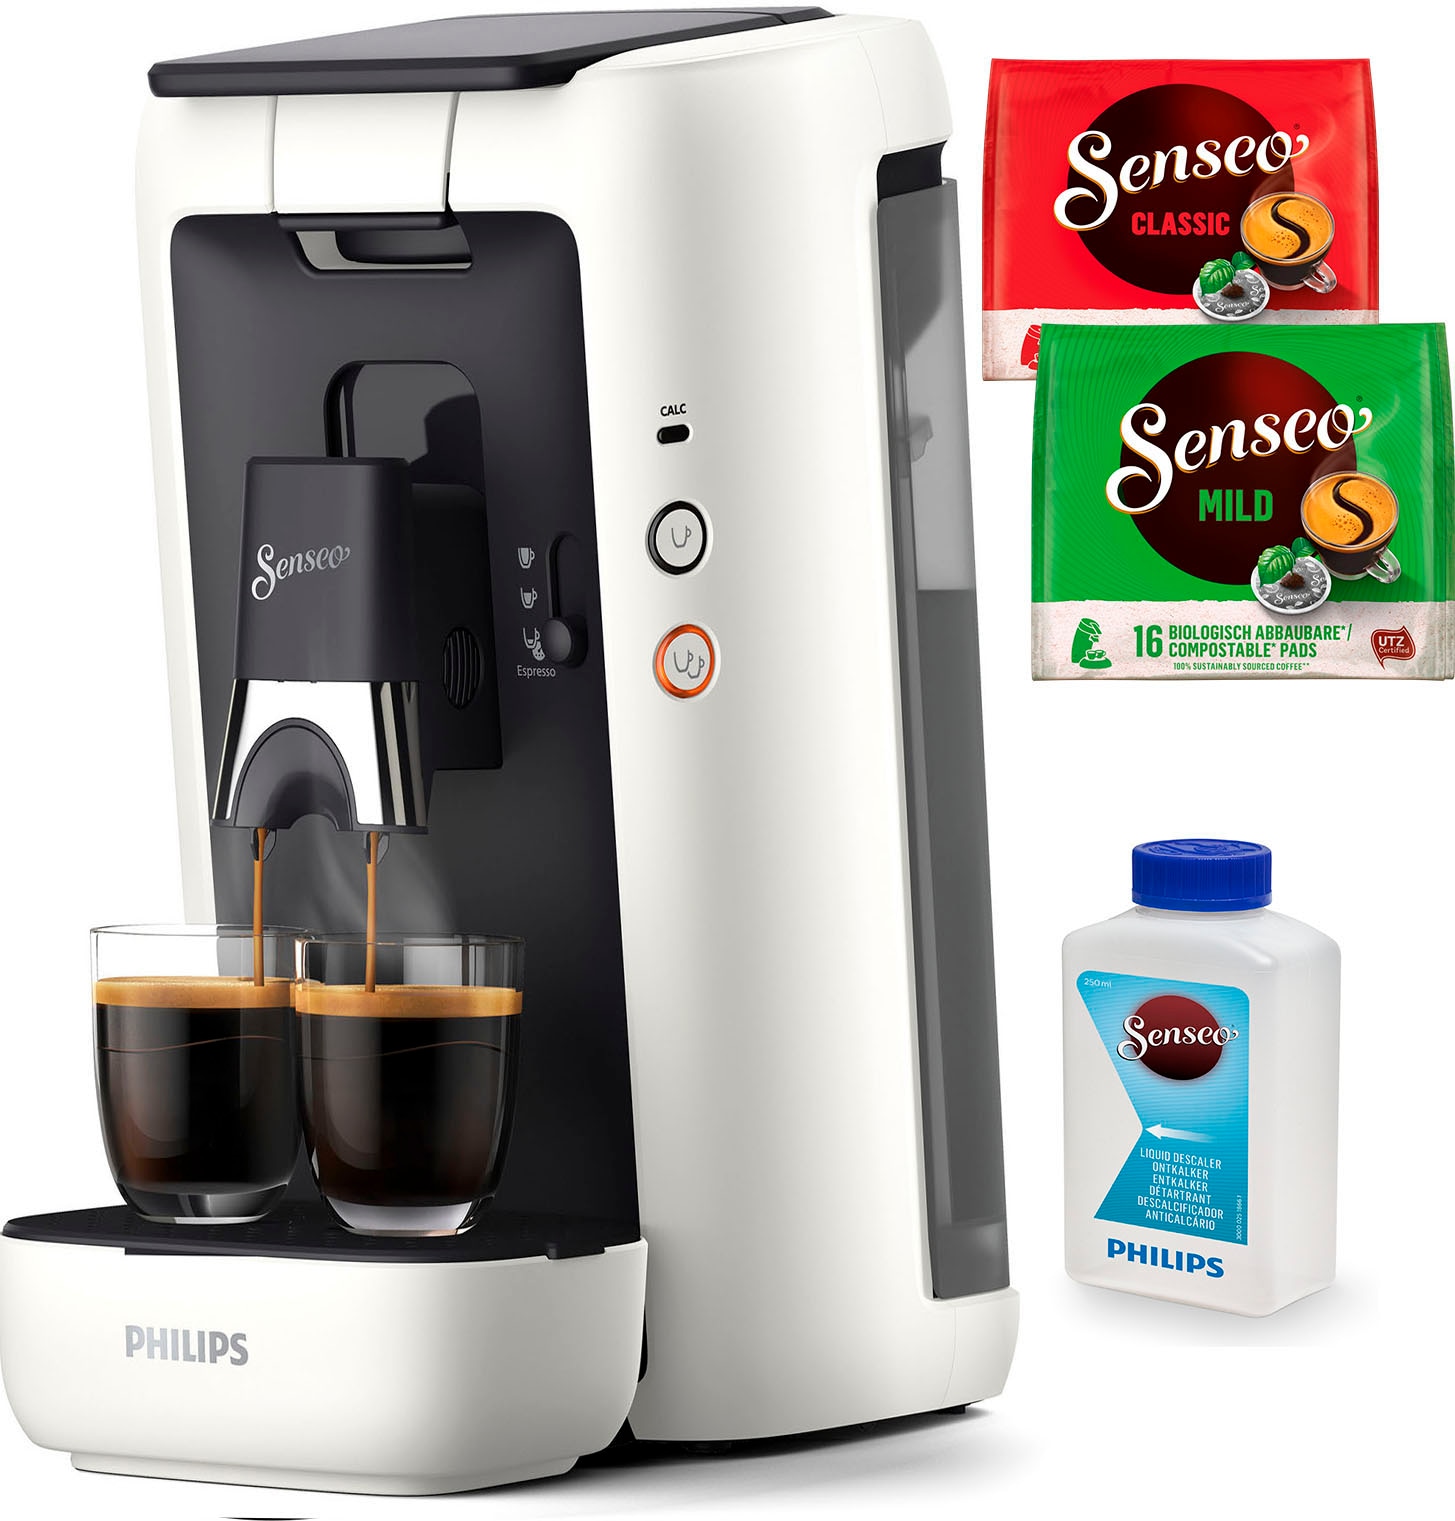 Philips Senseo Kaffeepadmaschine »Maestro CSA260/10, aus 80% recyceltem  Plastik, +3 Kaffeespezialitäten«, Memo-Funktion, inkl. Gratis-Zugaben im  Wert von € 14,- UVP kaufen